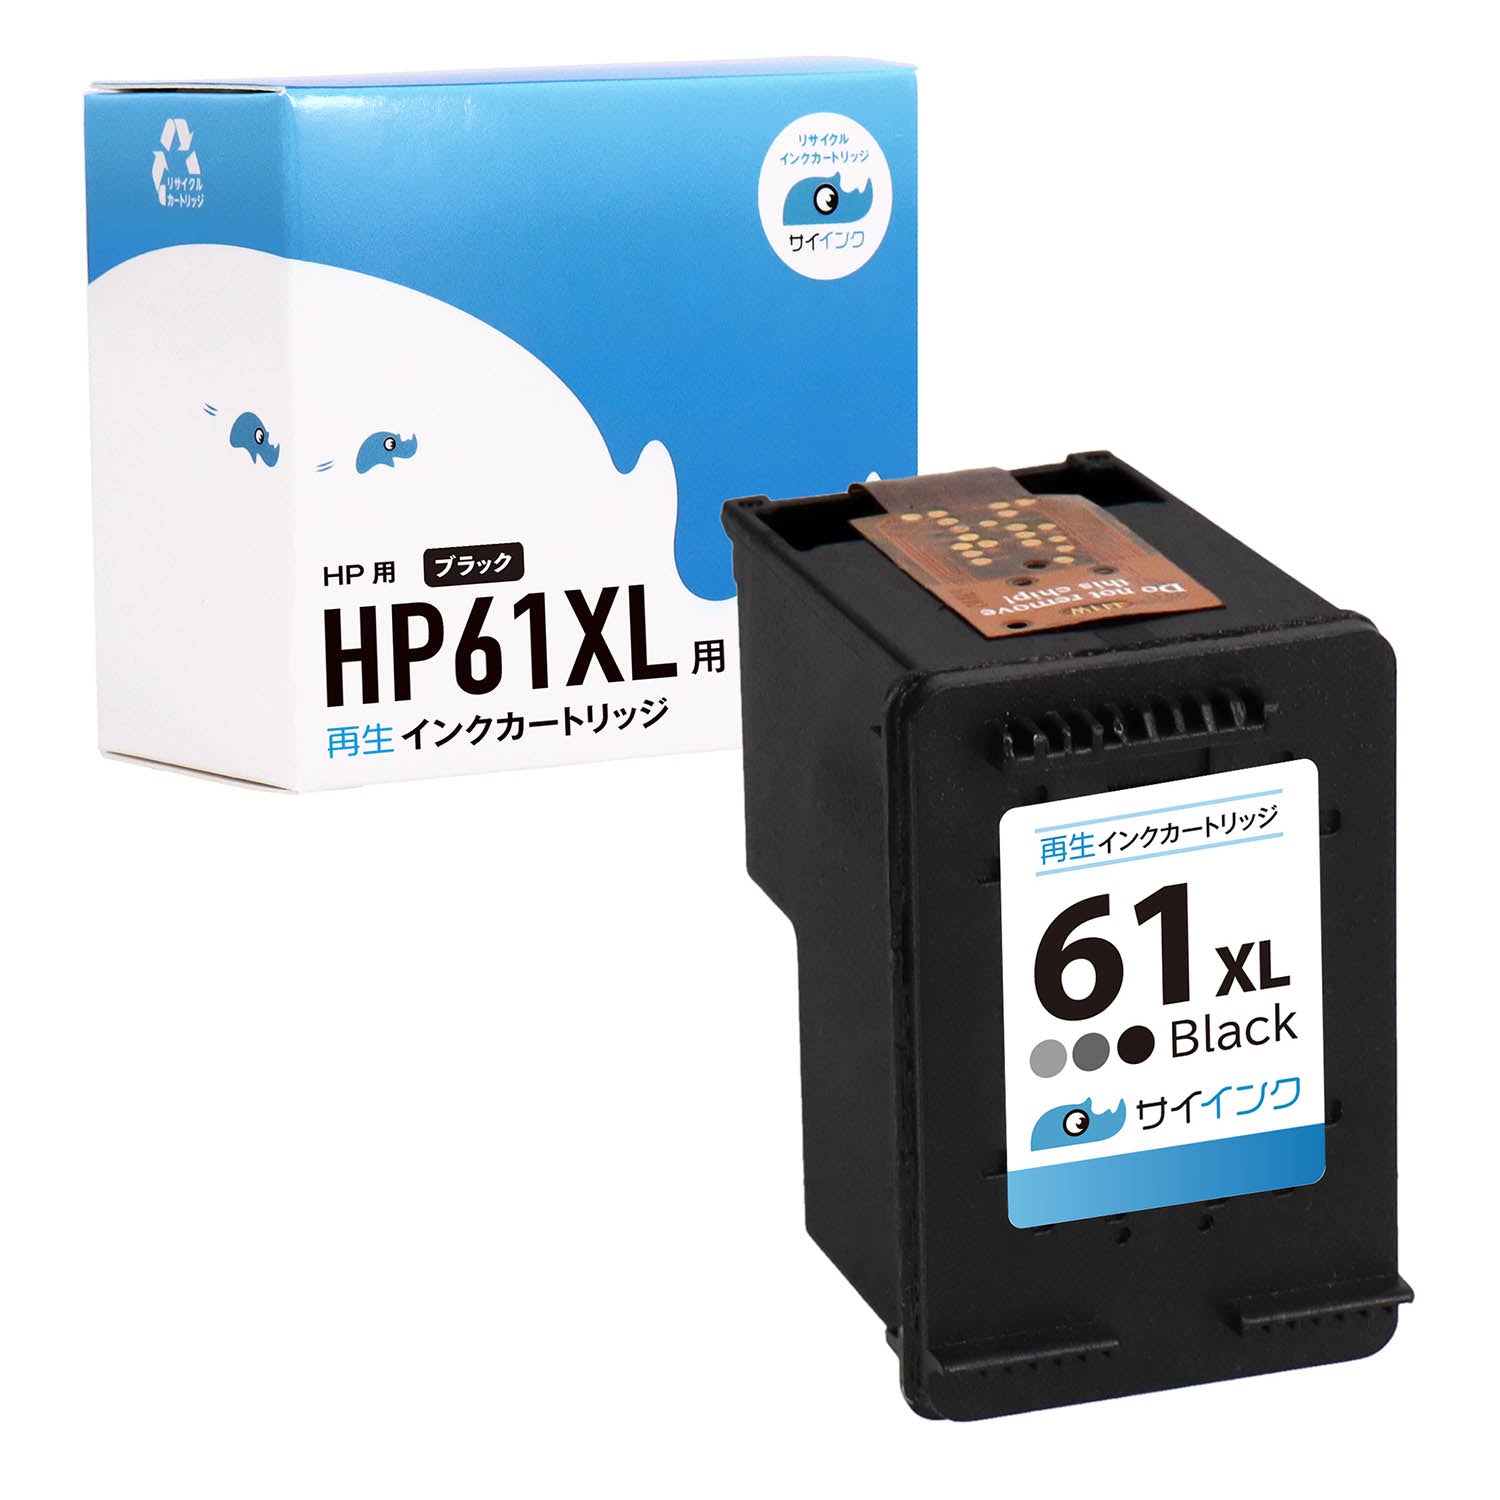 HP用 HP 61XL リサイクルインク ブラック 増量版